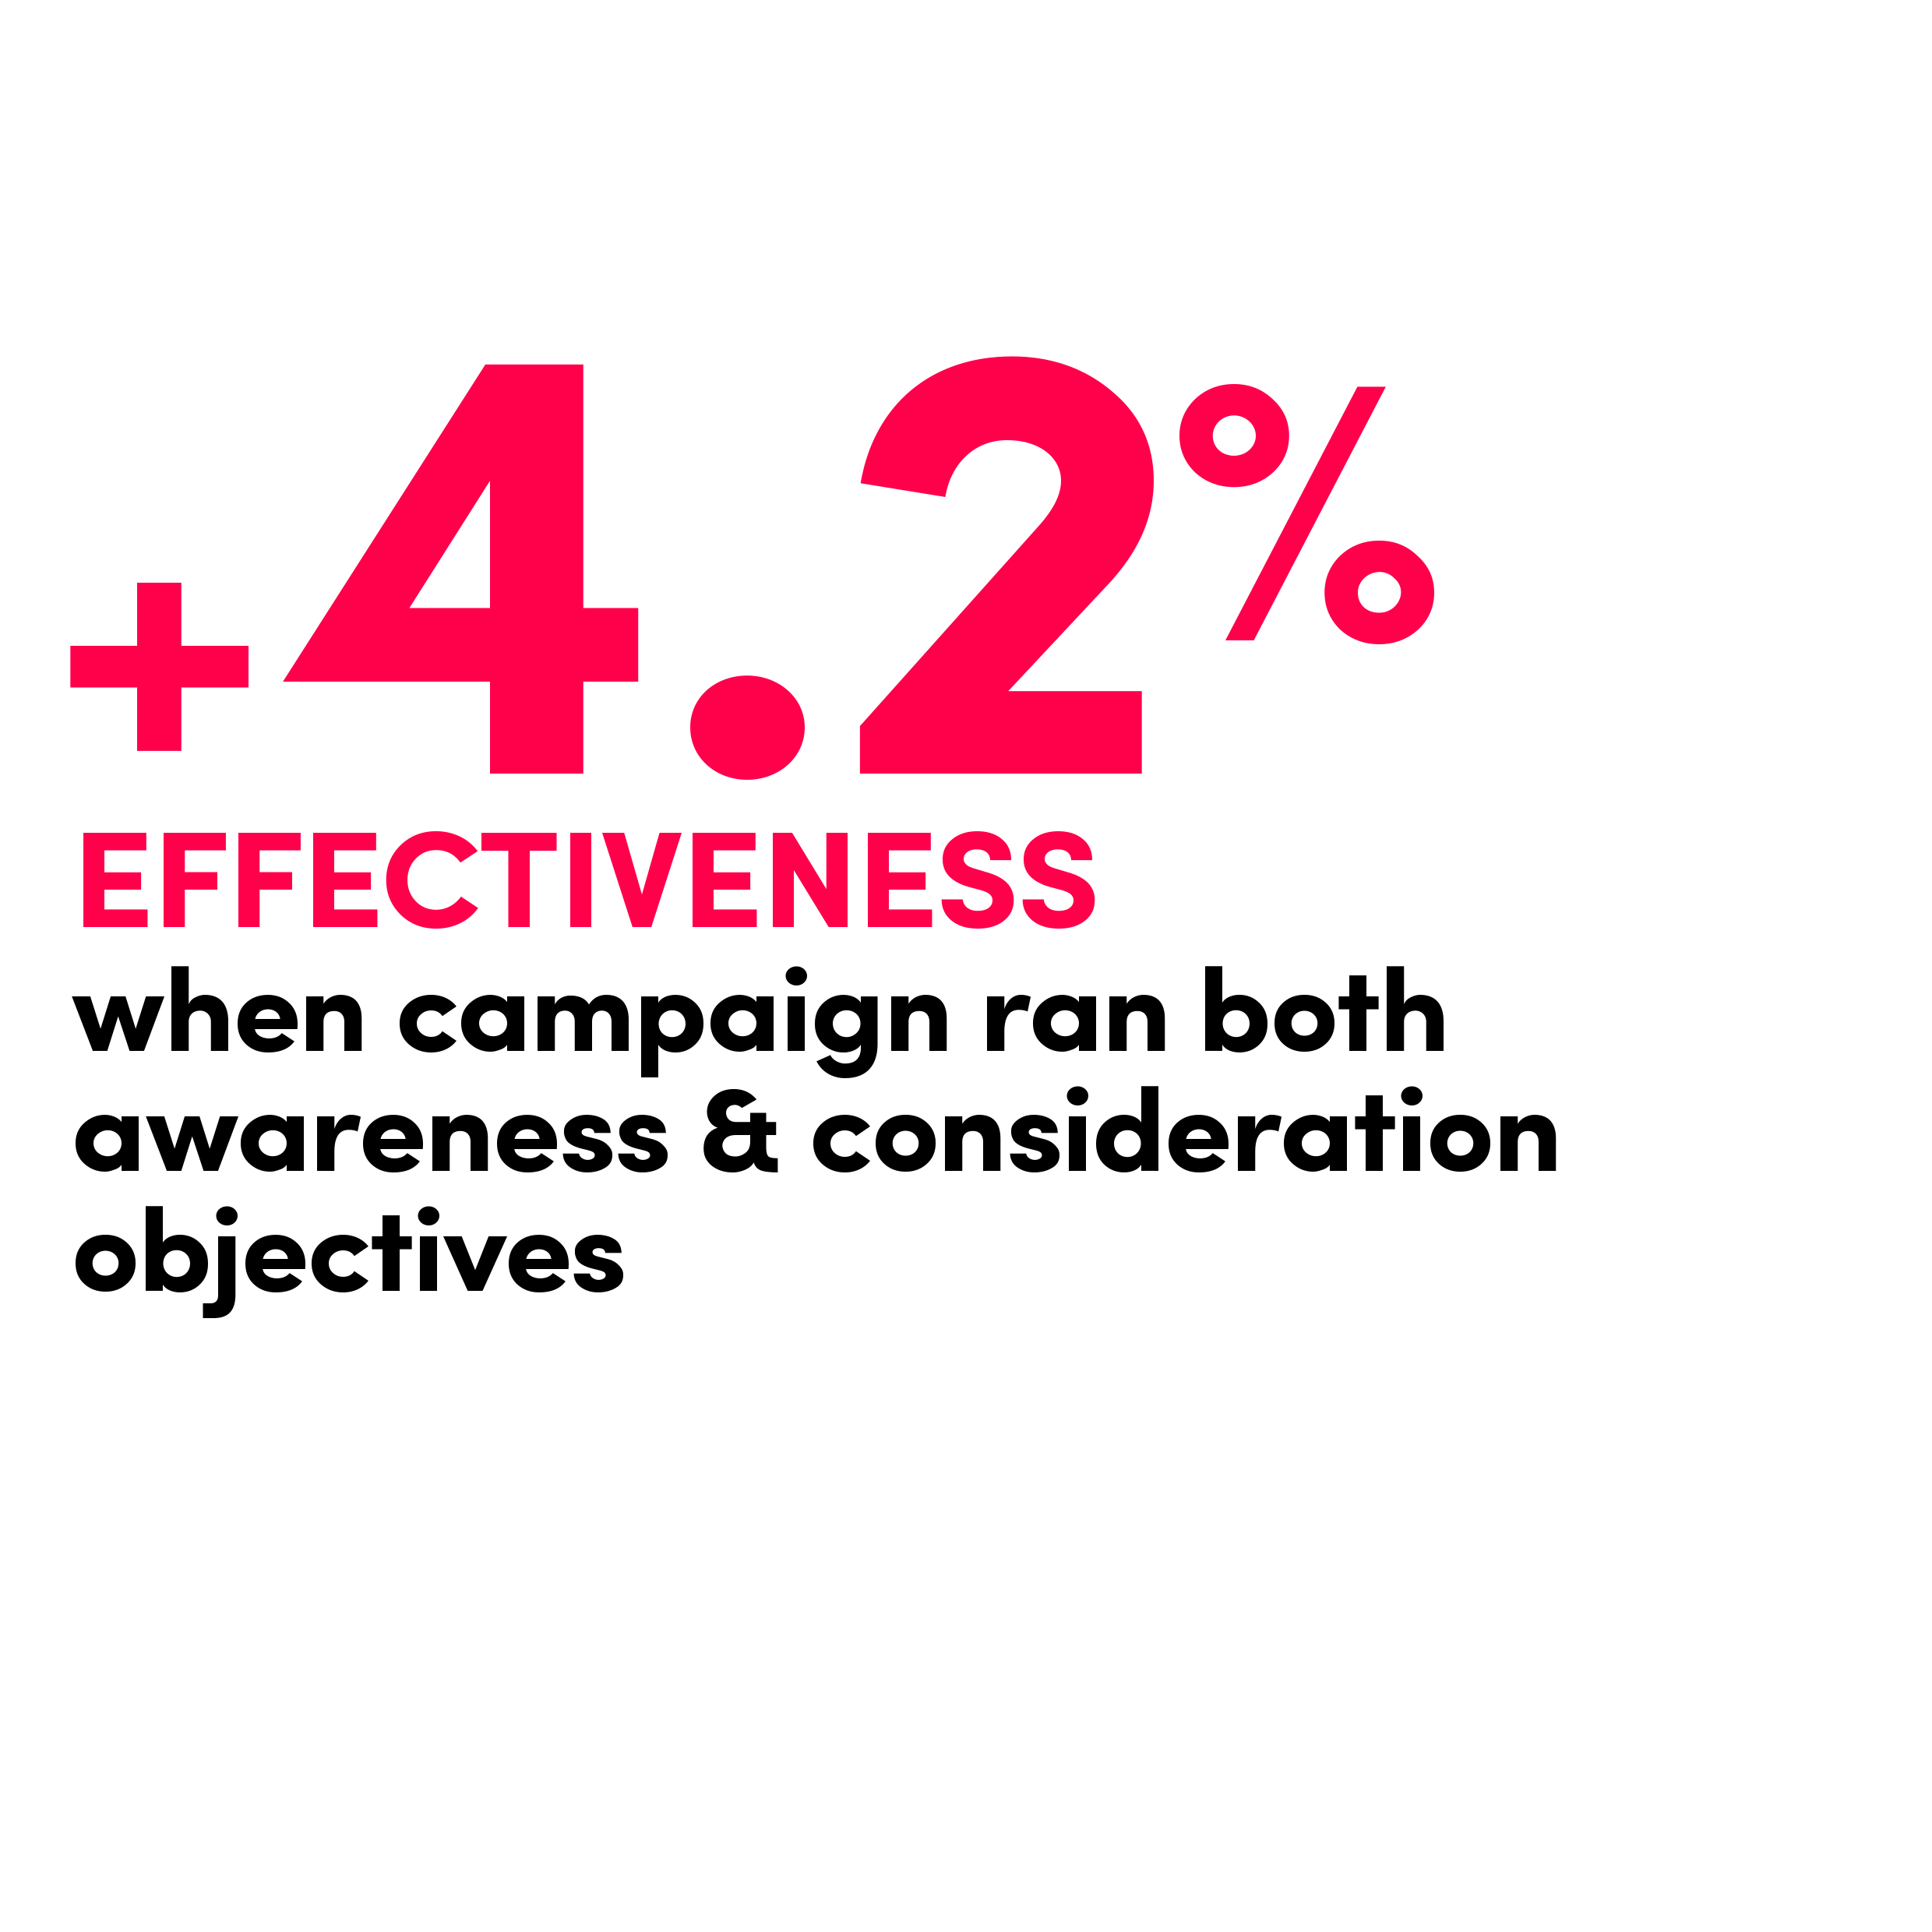 4.2% Higher Effectiveness